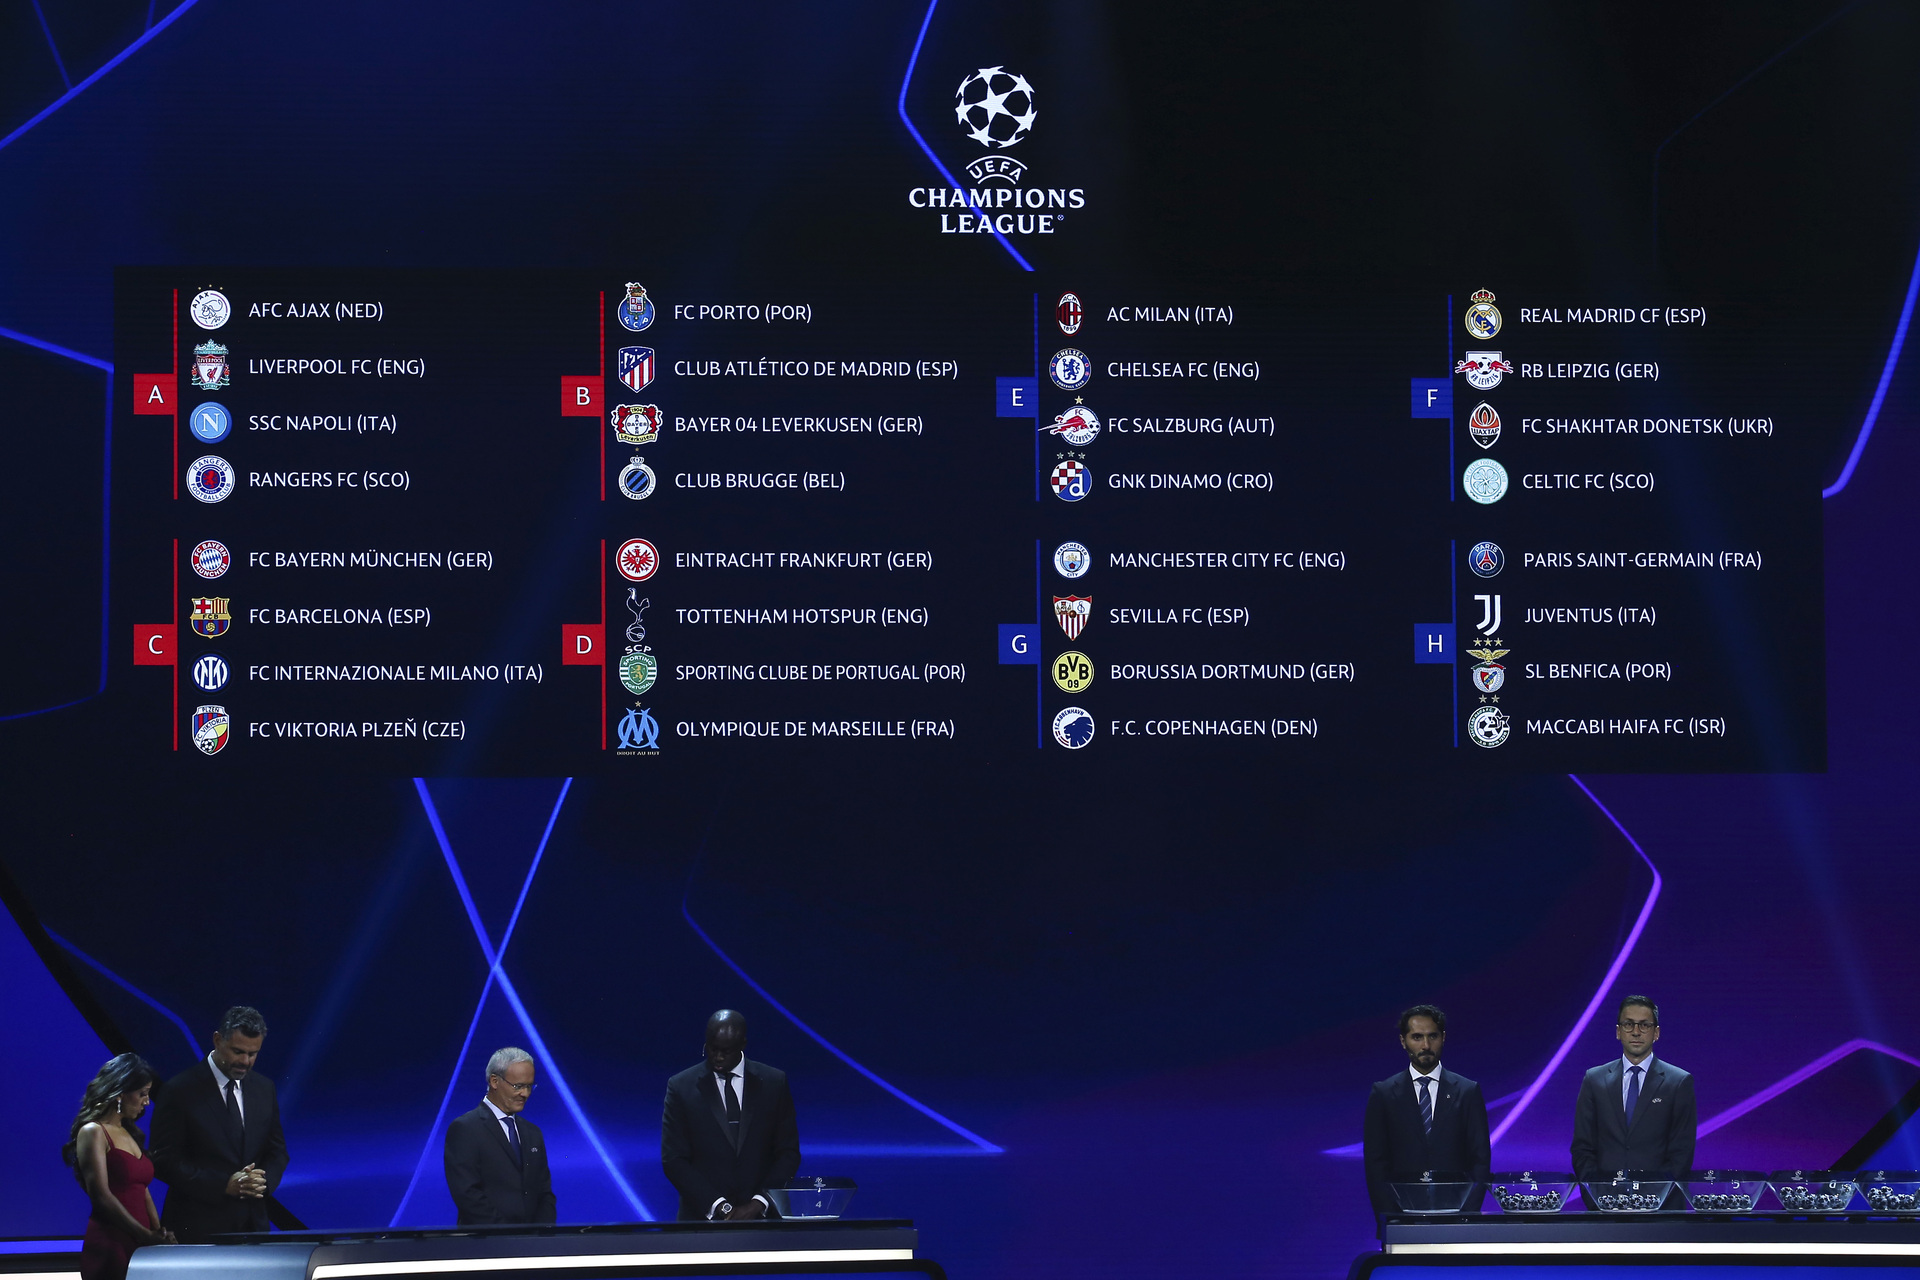 Así quedaron definidos los grupos para la Champions League 2022/23